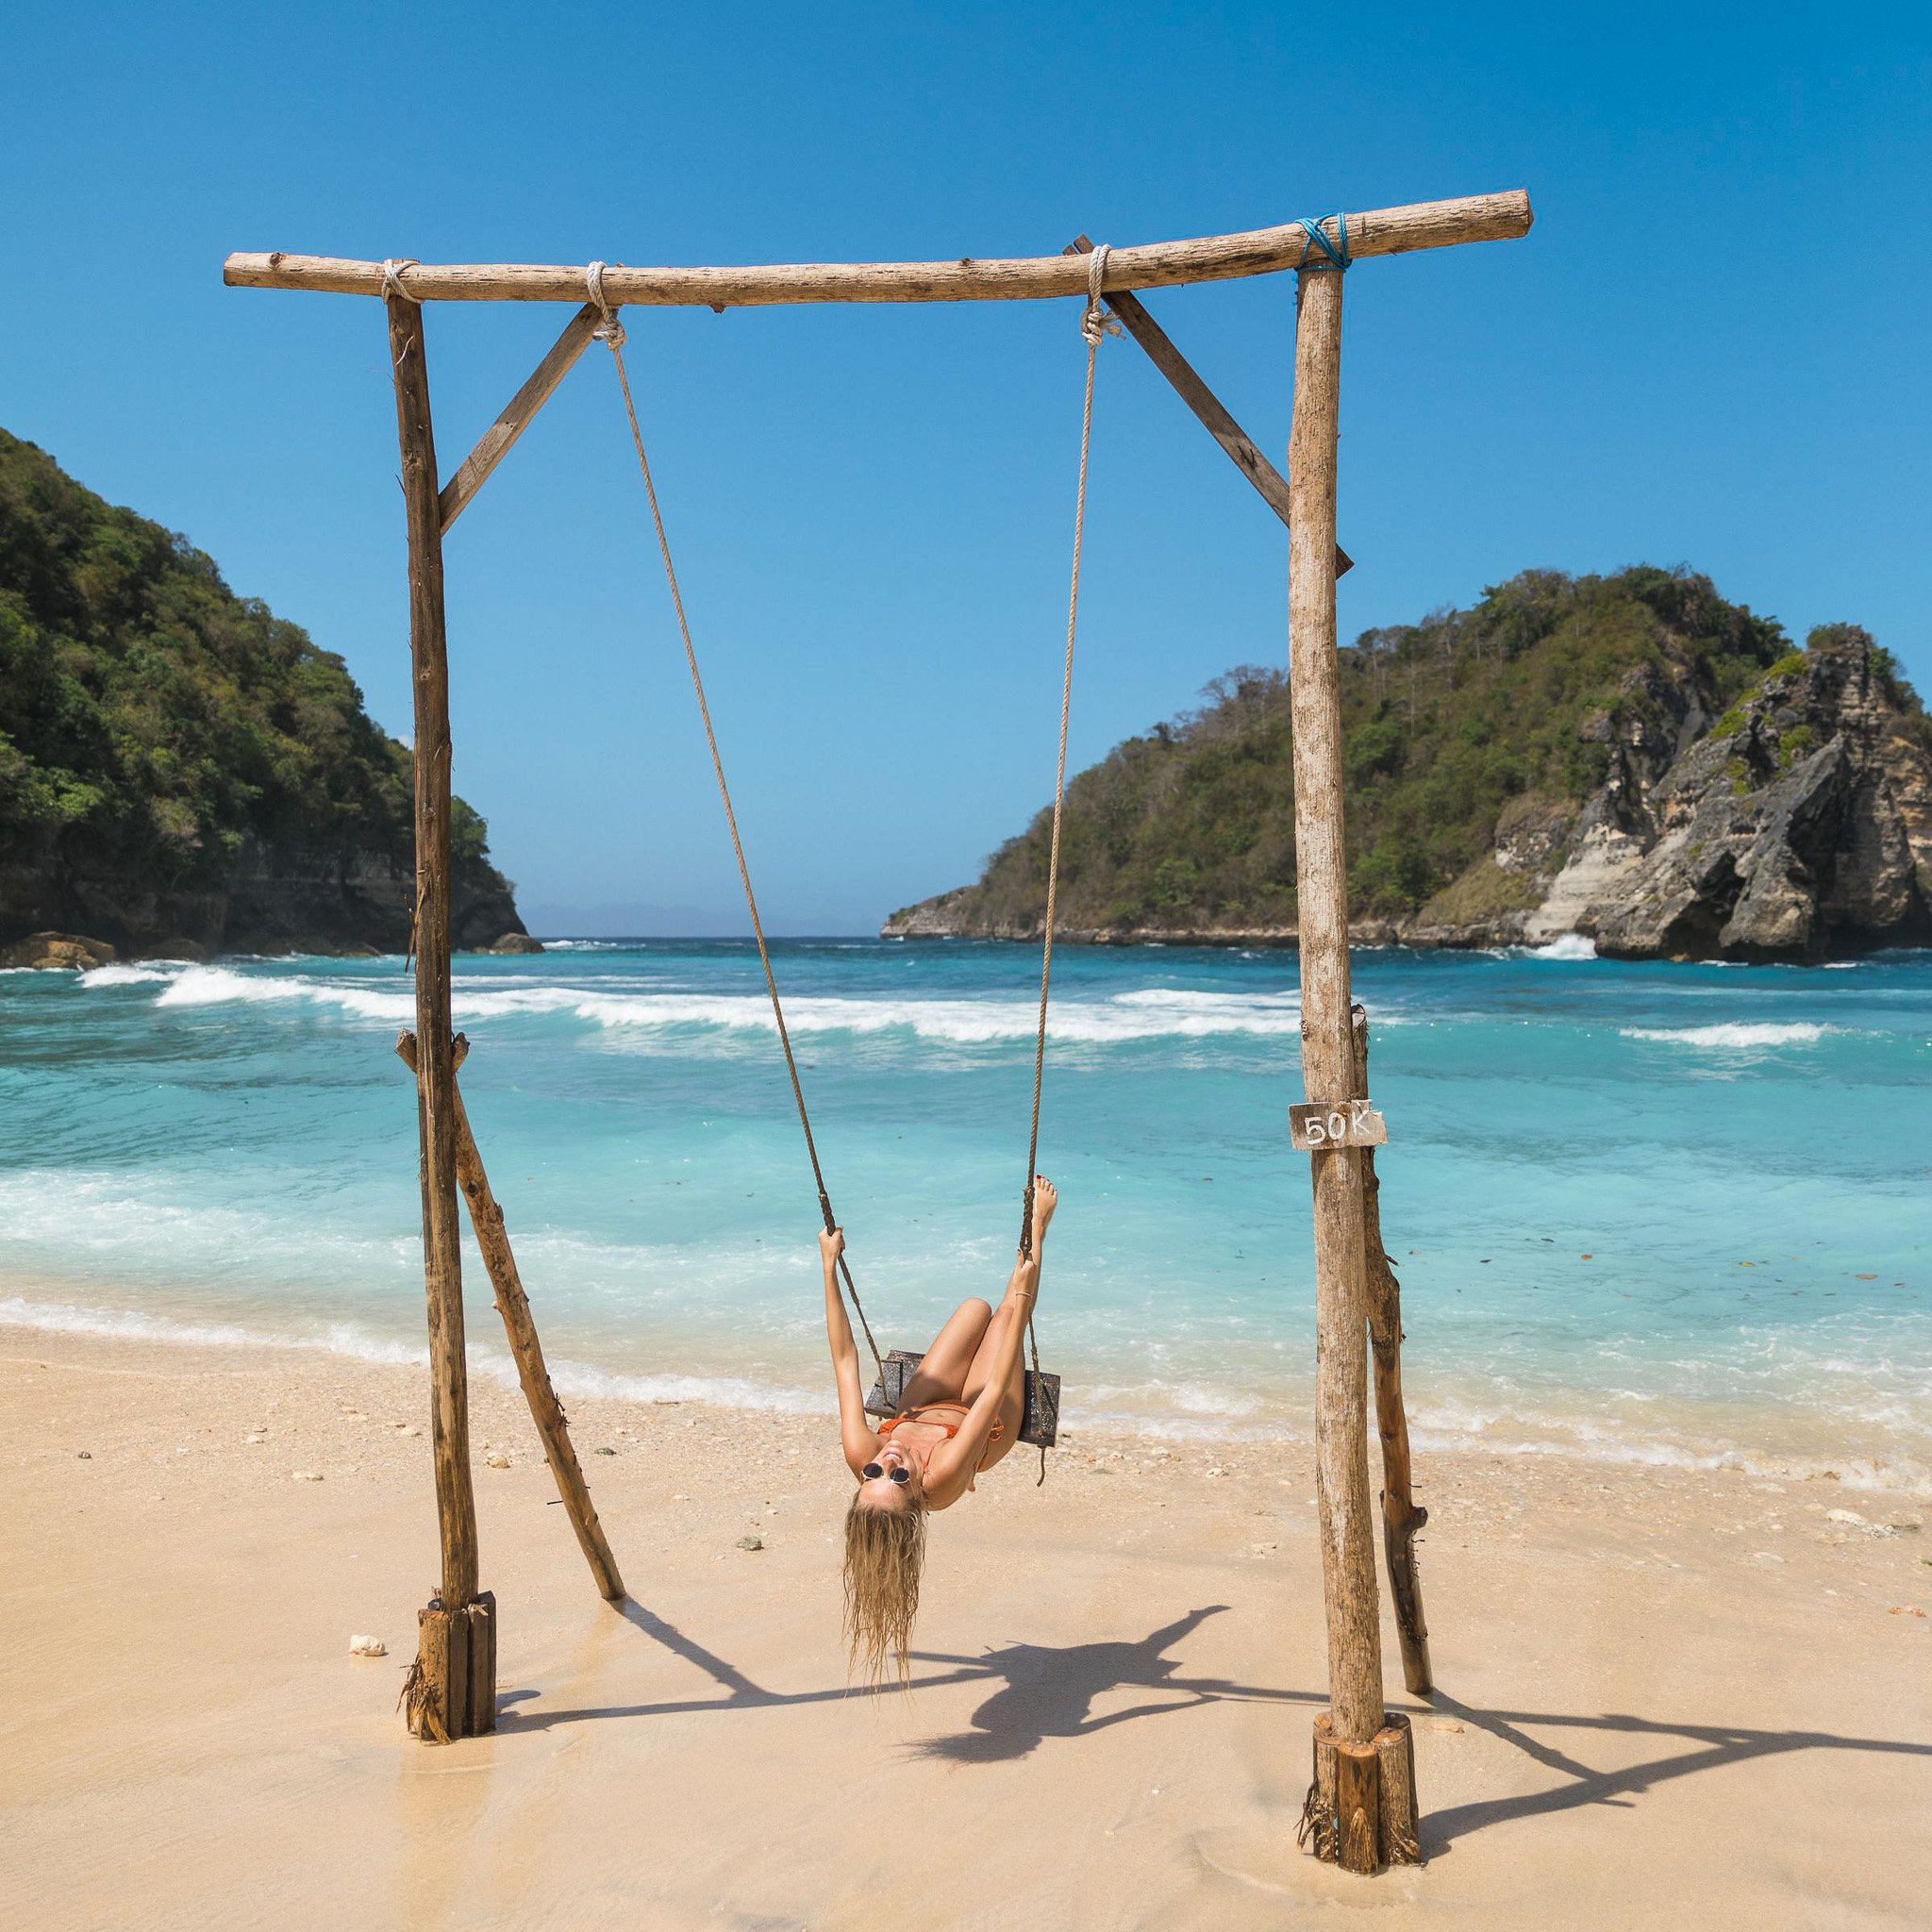 TrovaTrip Traveler on a swing in Bali.